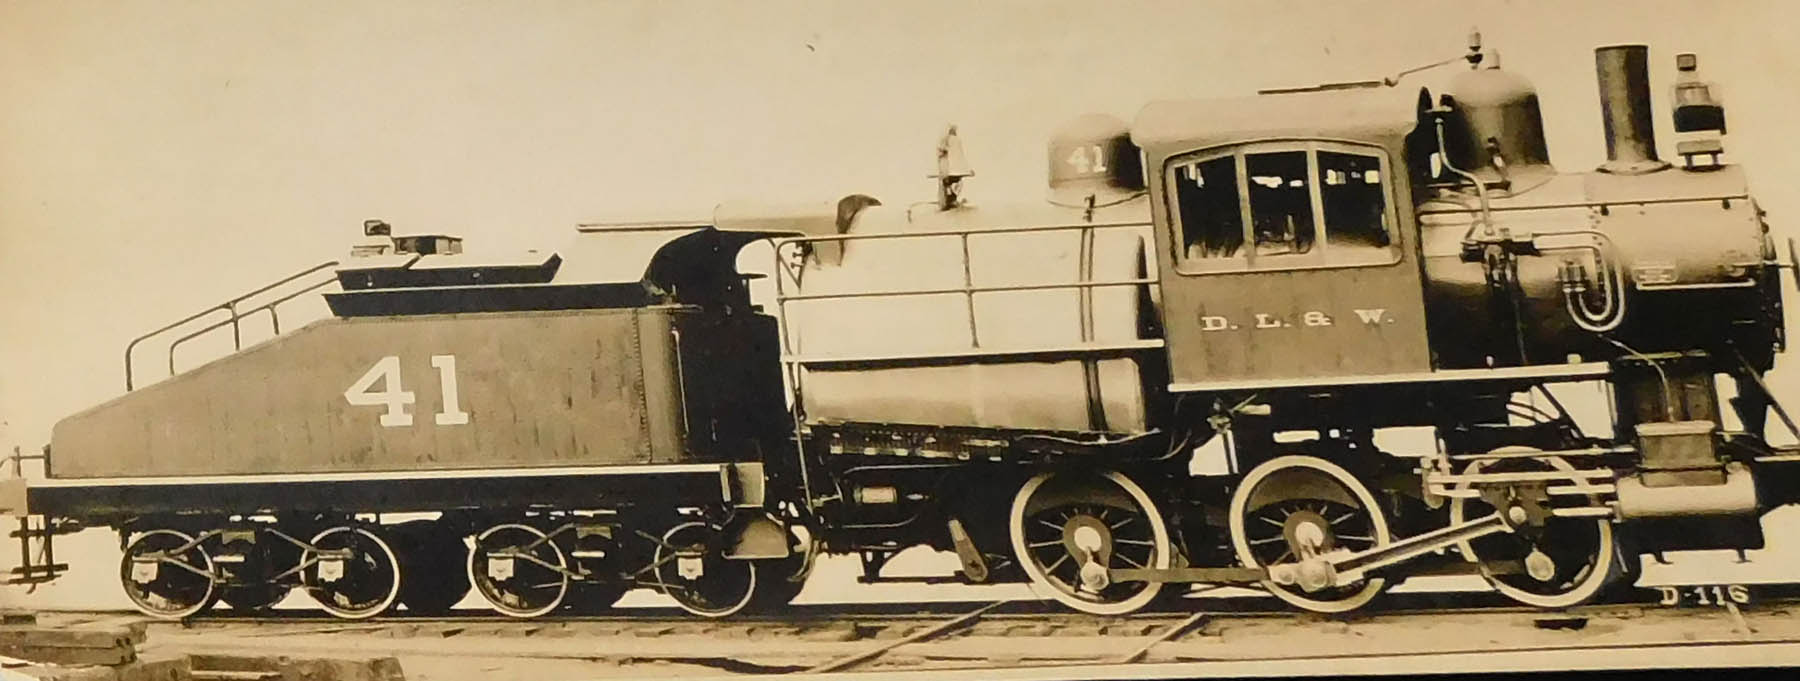 (D.L &W. Railroad locomotive number 832